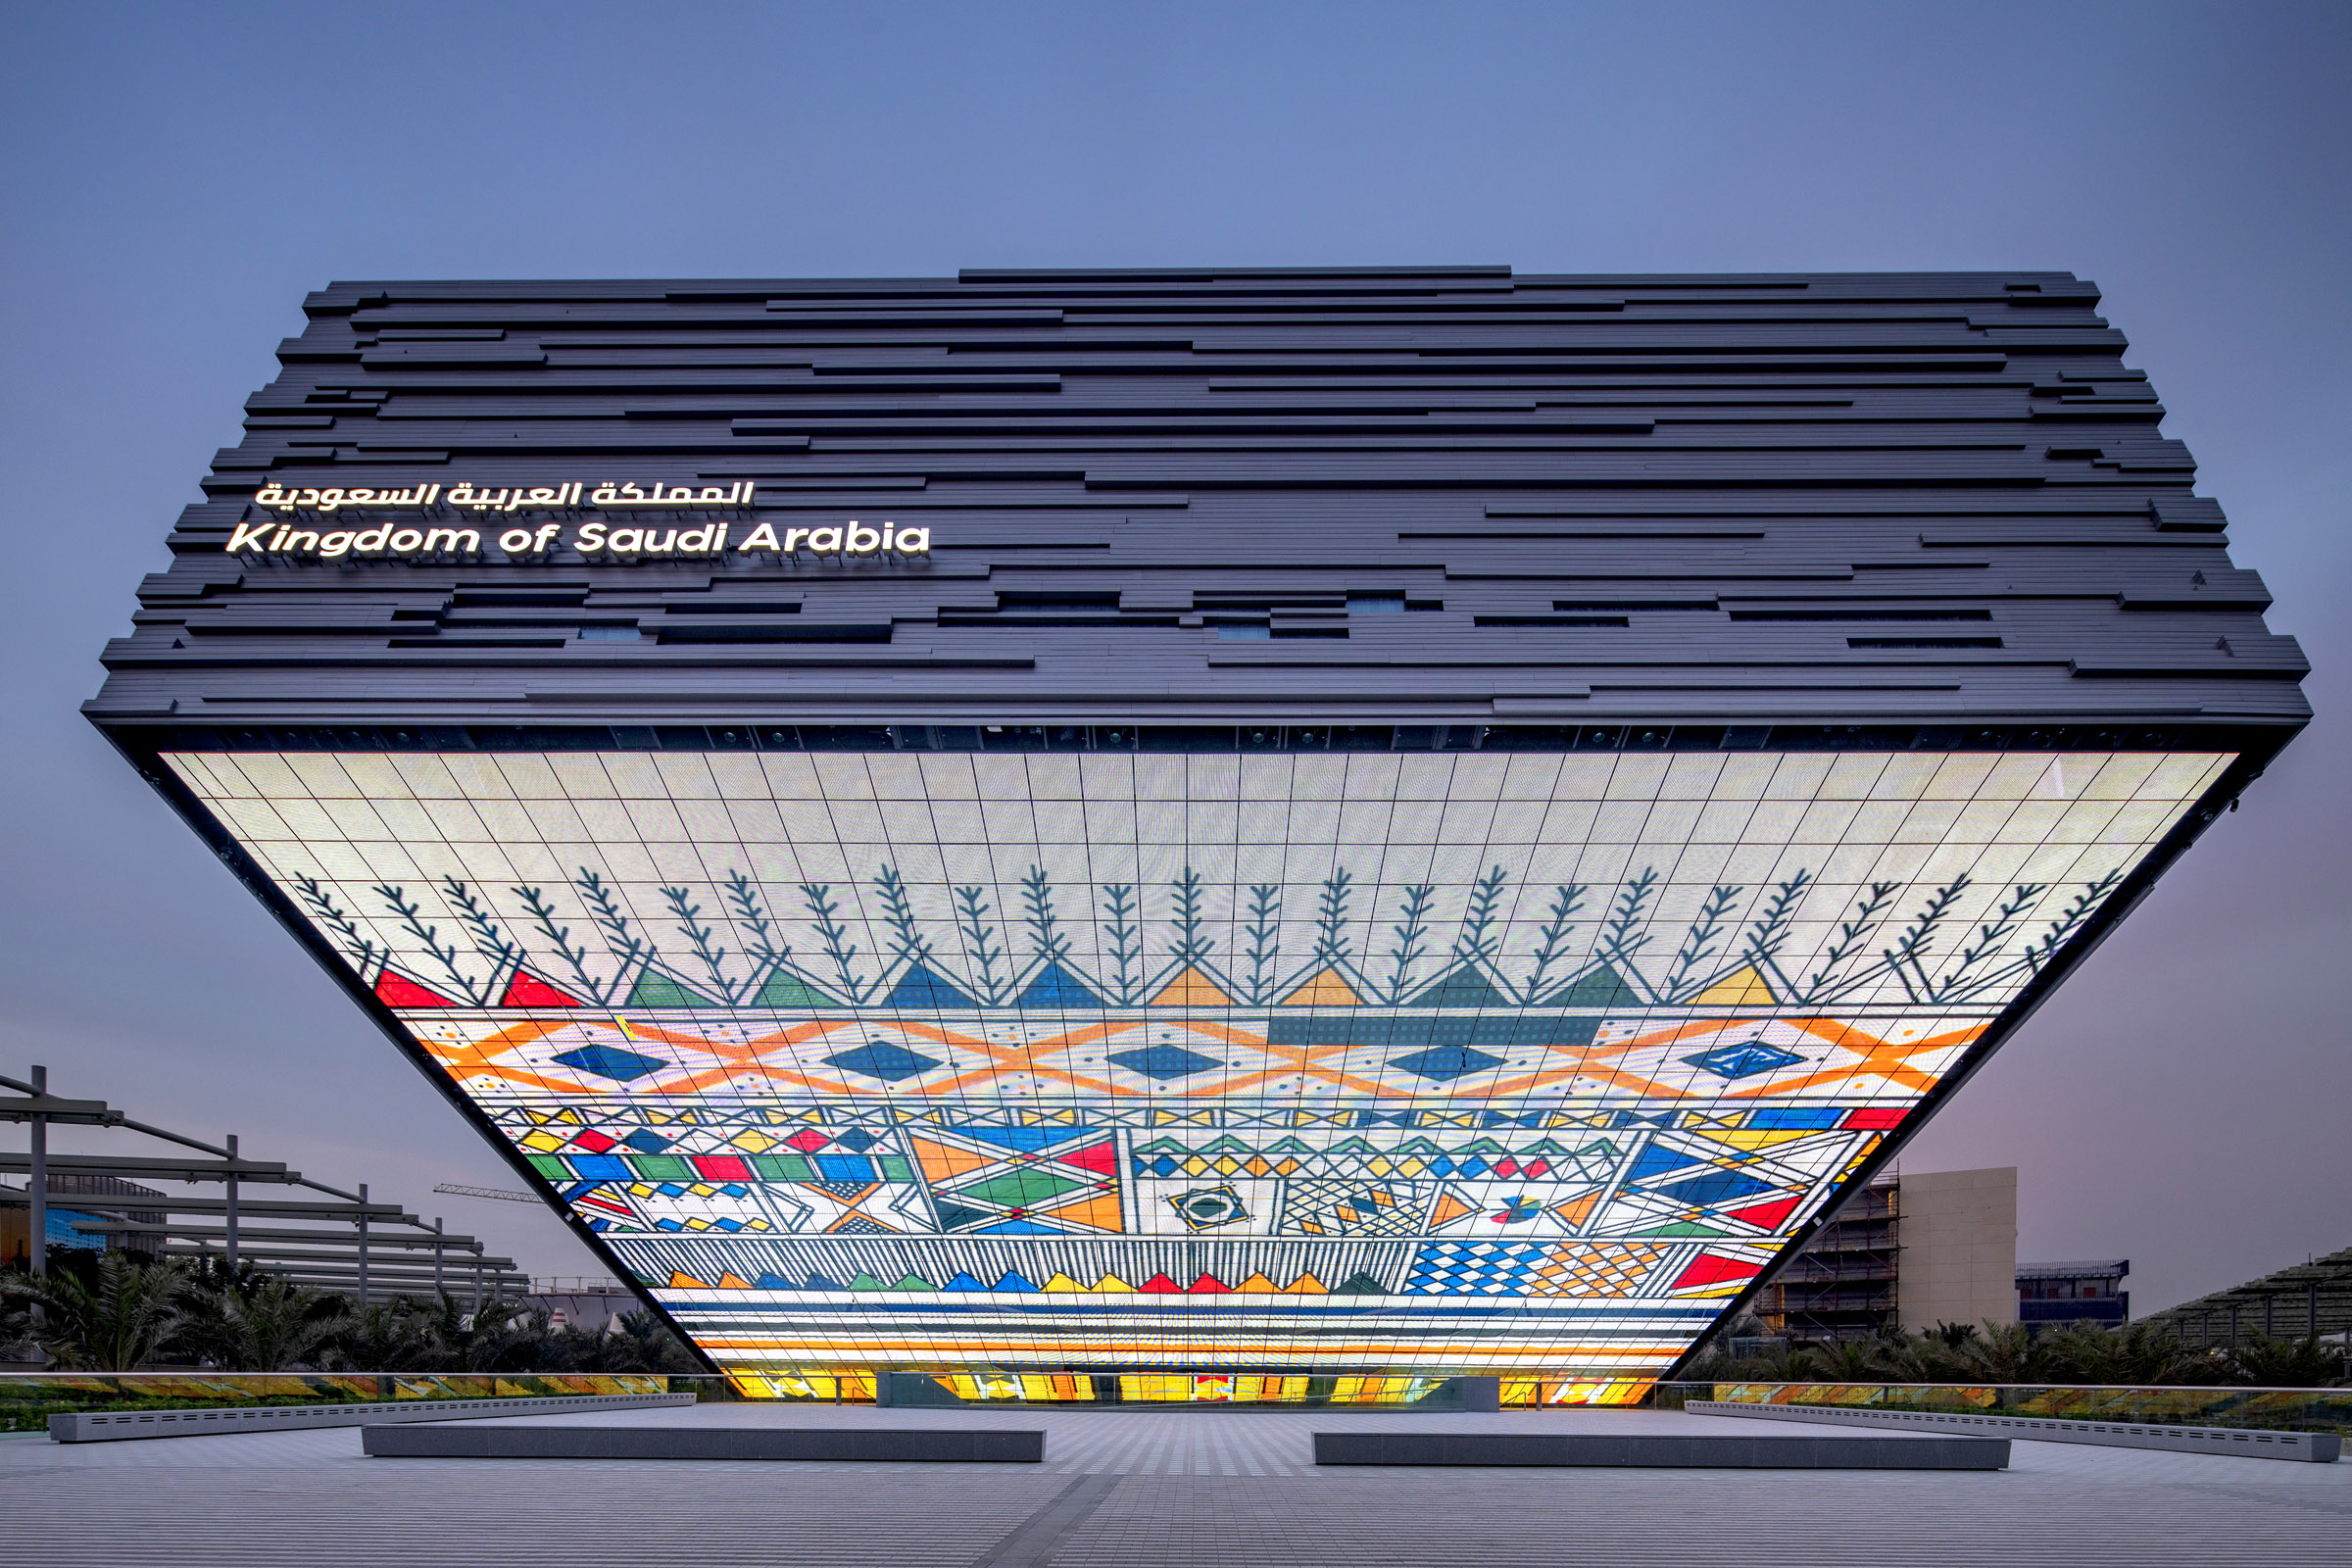 The Kingdom of Saudi Arabia Pavilion at Expo 2020 Dubai